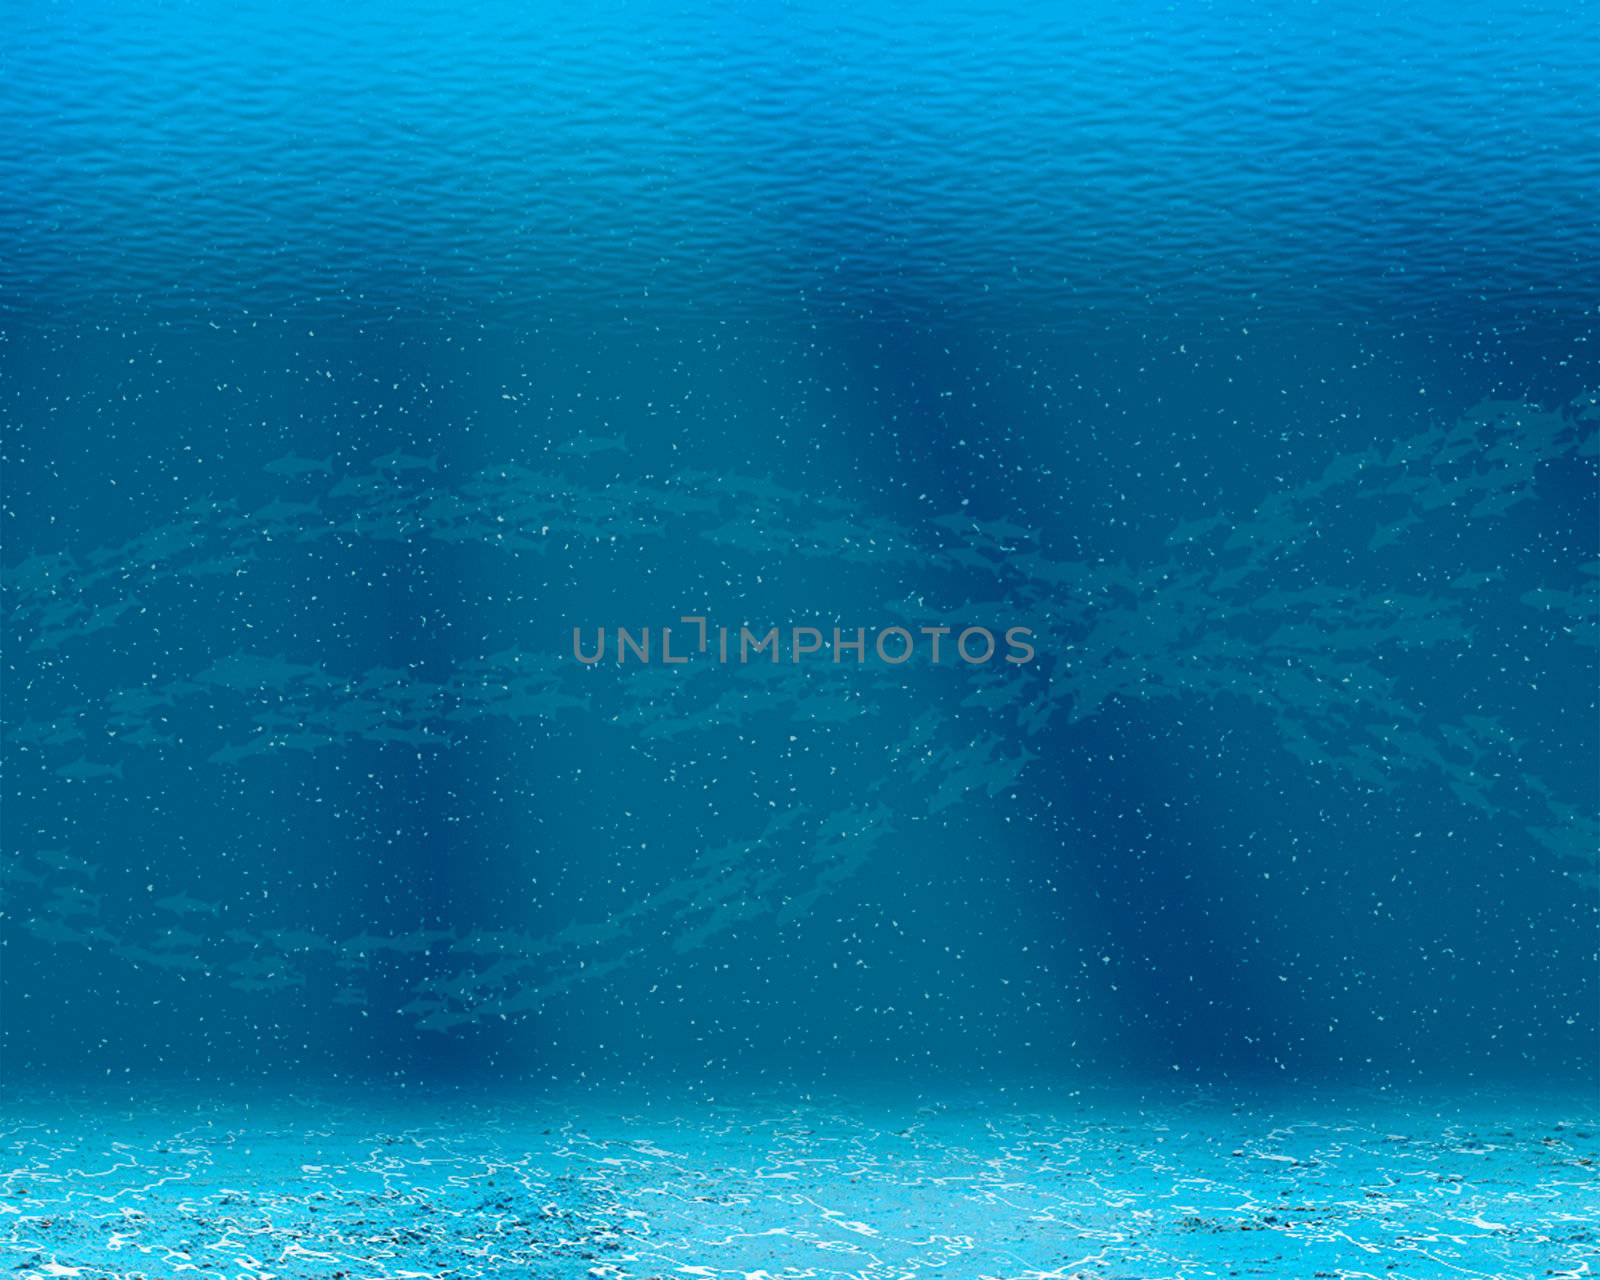 Underwater scene by nikitabuida